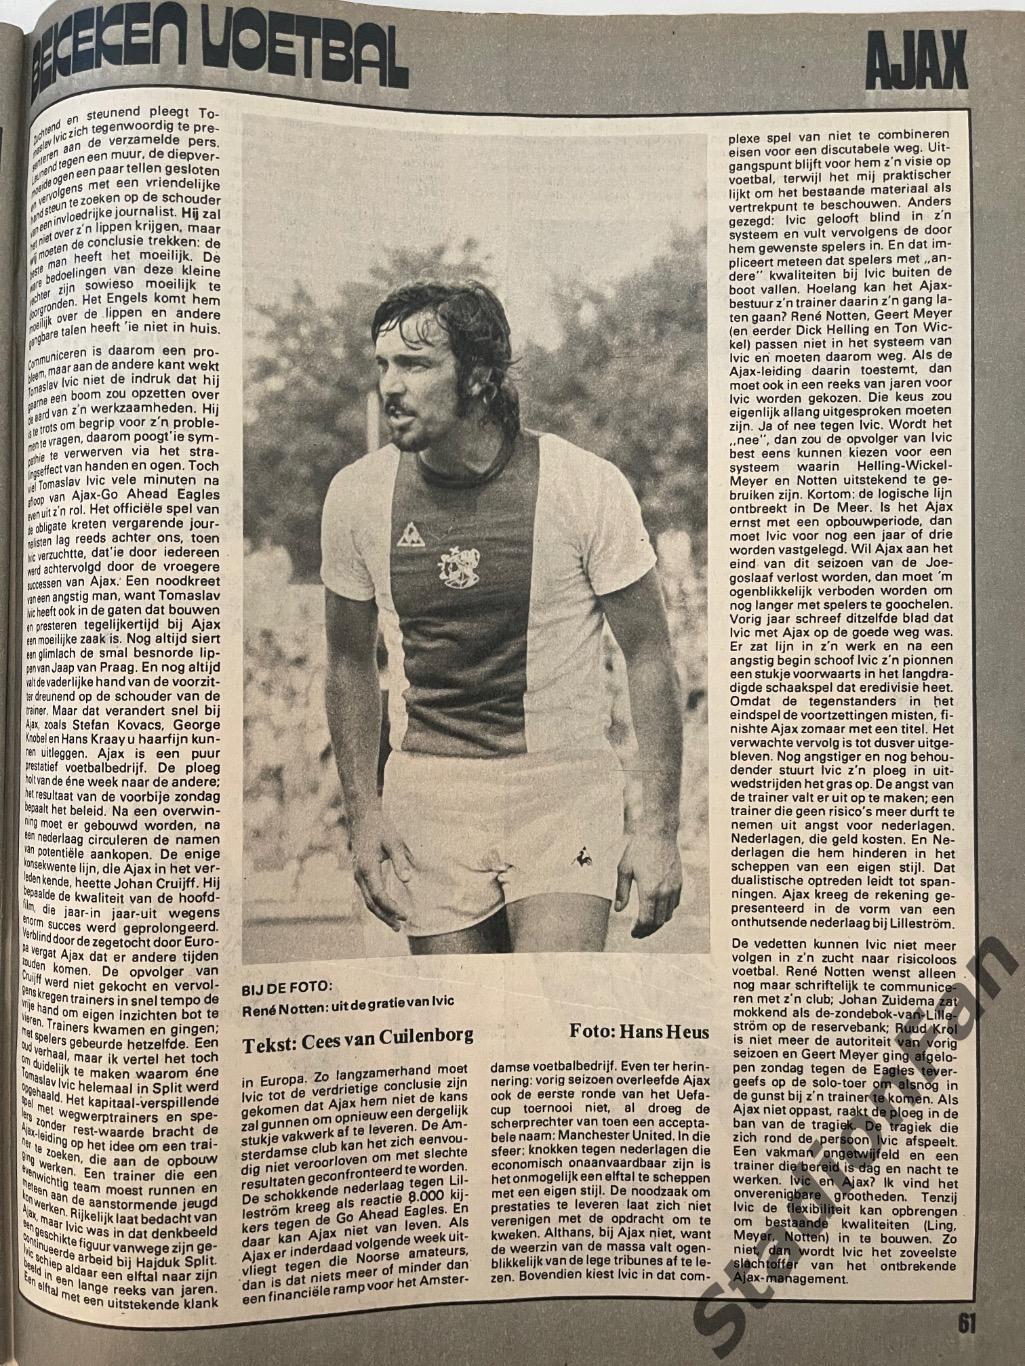 Журнал Voetbal nr.38 - 1977 год. 6